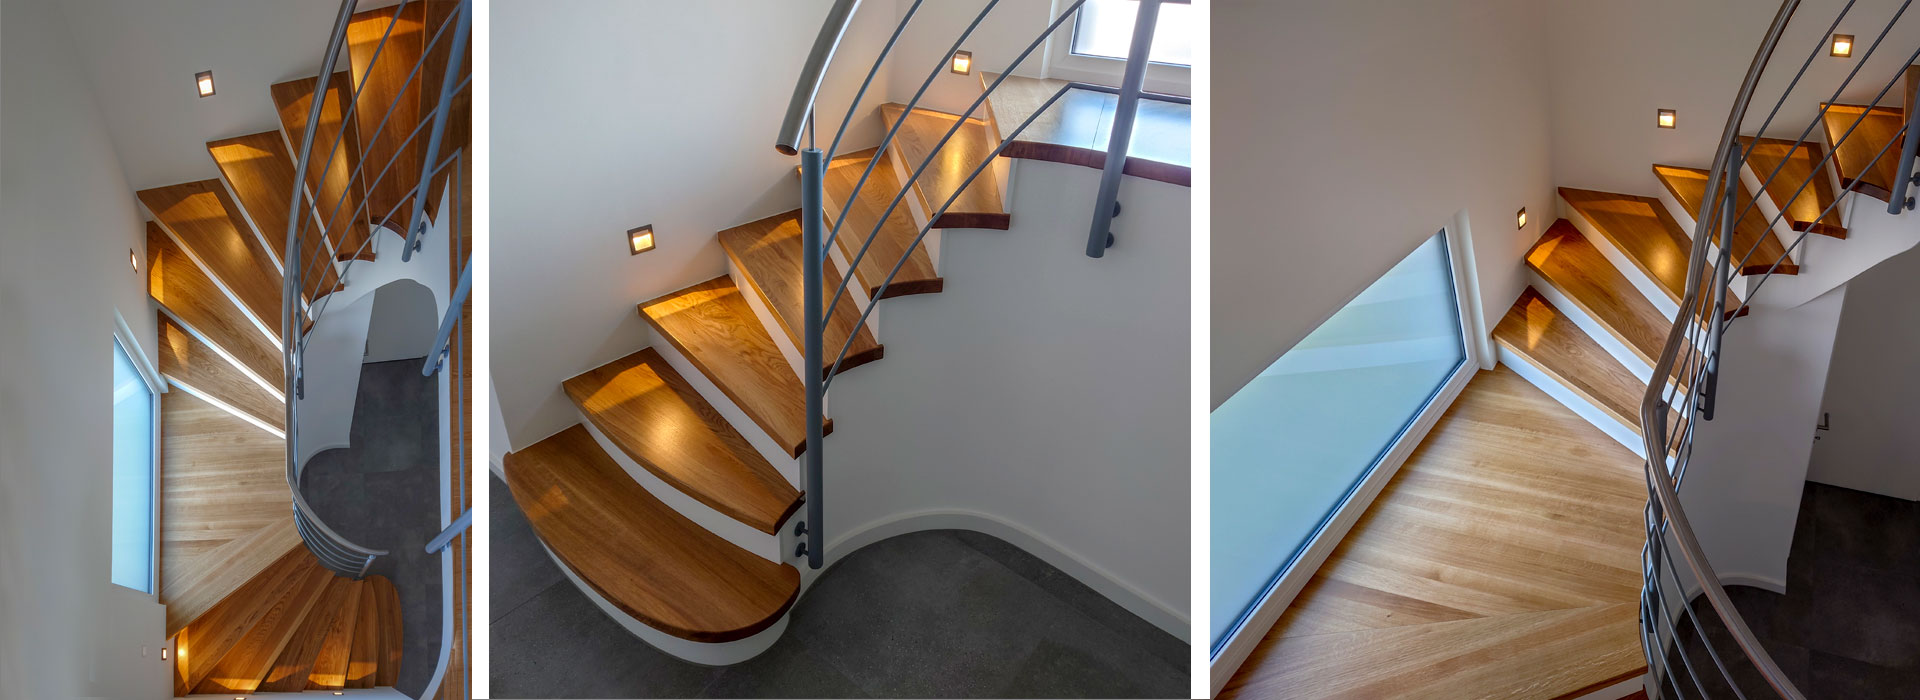 Treppen Gewendelt, eingestemmt oder aufgesattelt: Wir fertigen, liefern und montieren Treppen aus edlen Hölzern auf Maß. Dabei werden die Oberflächen nach Ihrem Wunsch lackiert oder geölt.